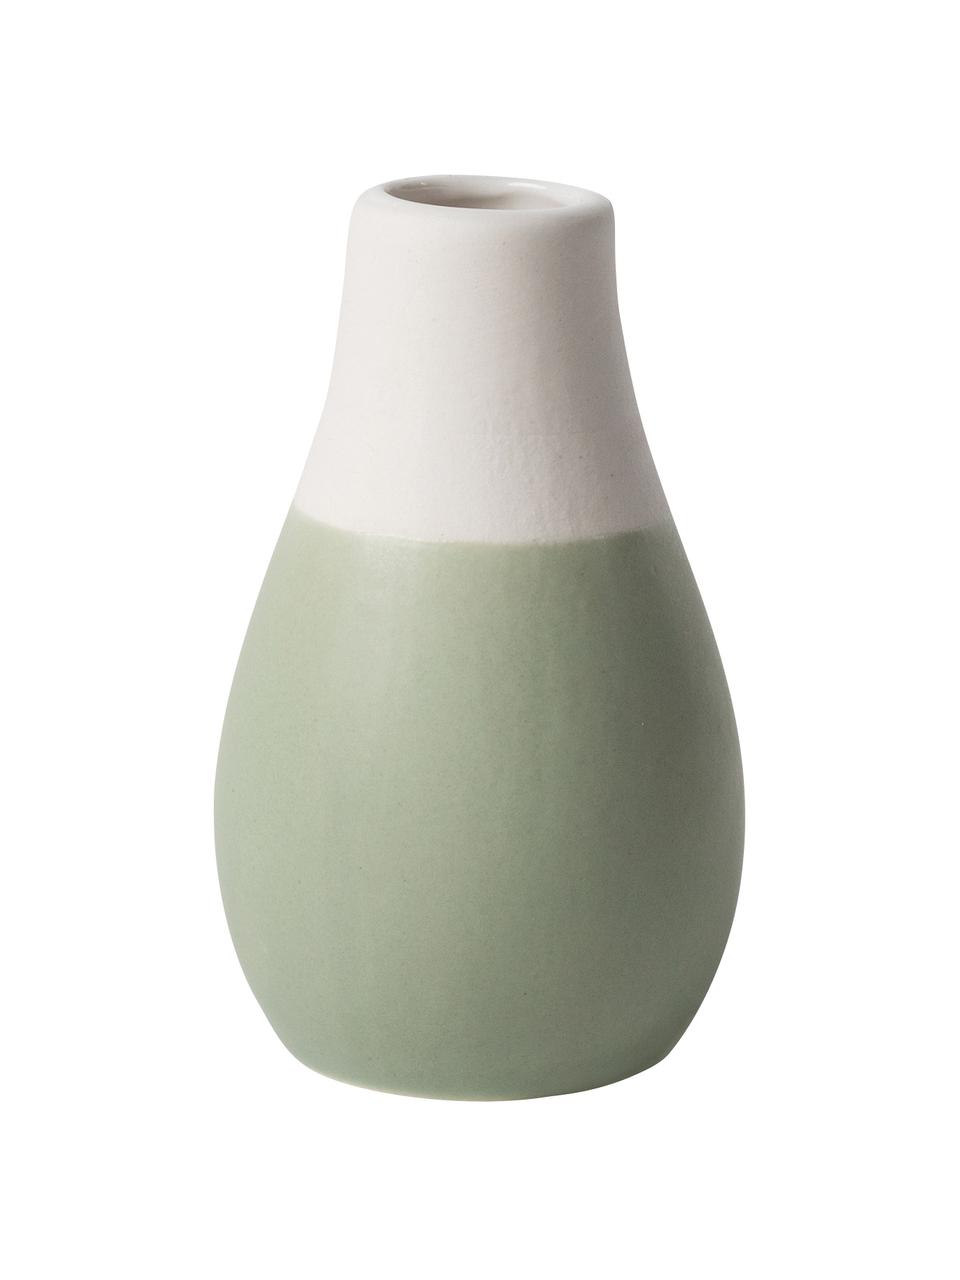 Sada malých váz z kameniny Pastell, 3 díly, Odstíny zelené, bílá